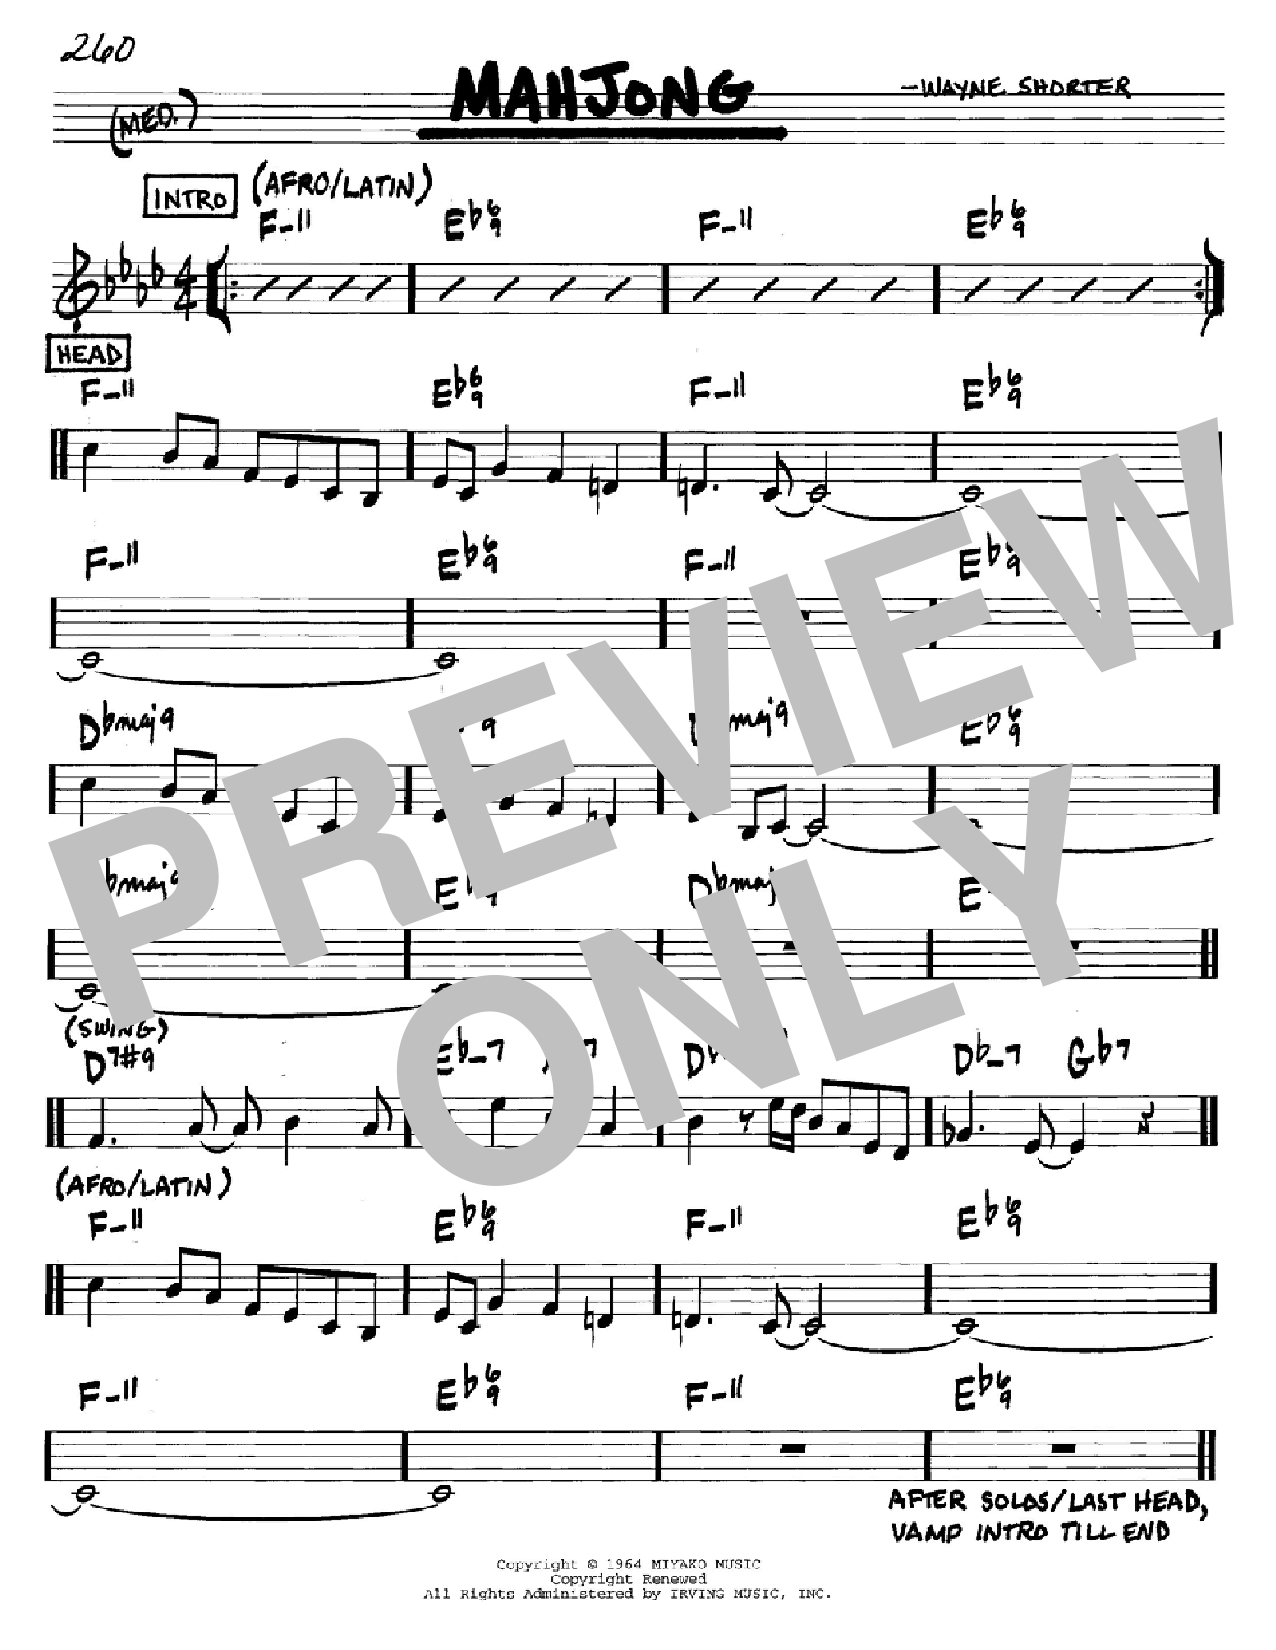 Wayne Shorter Mahjong Sheet Music Notes & Chords for Real Book - Melody & Chords - Eb Instruments - Download or Print PDF